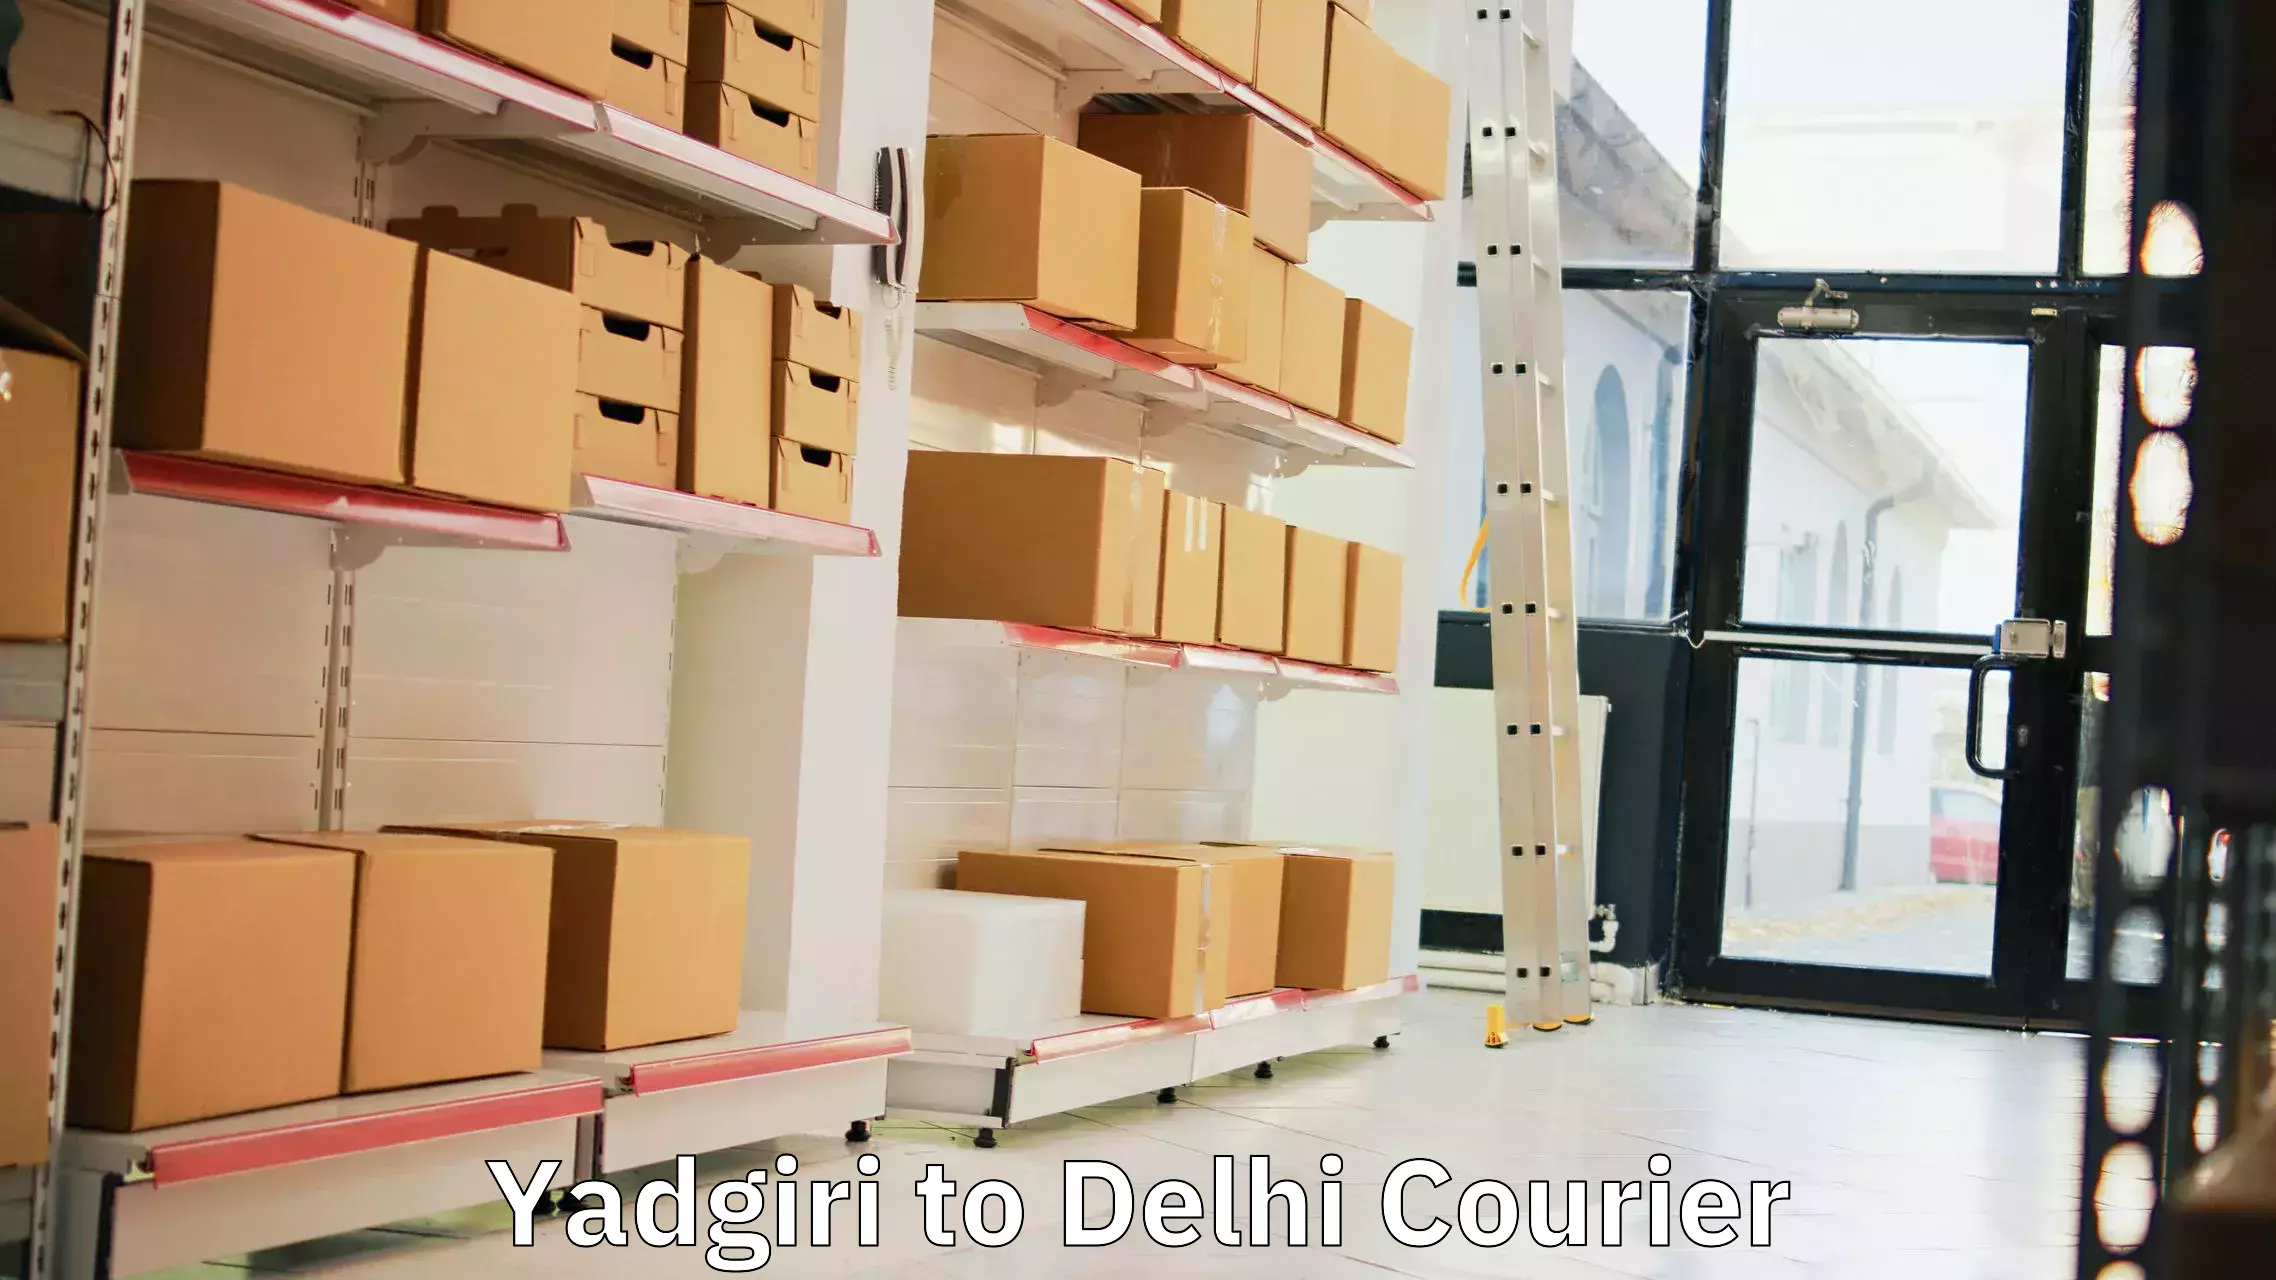 Modern courier technology Yadgiri to Kalkaji